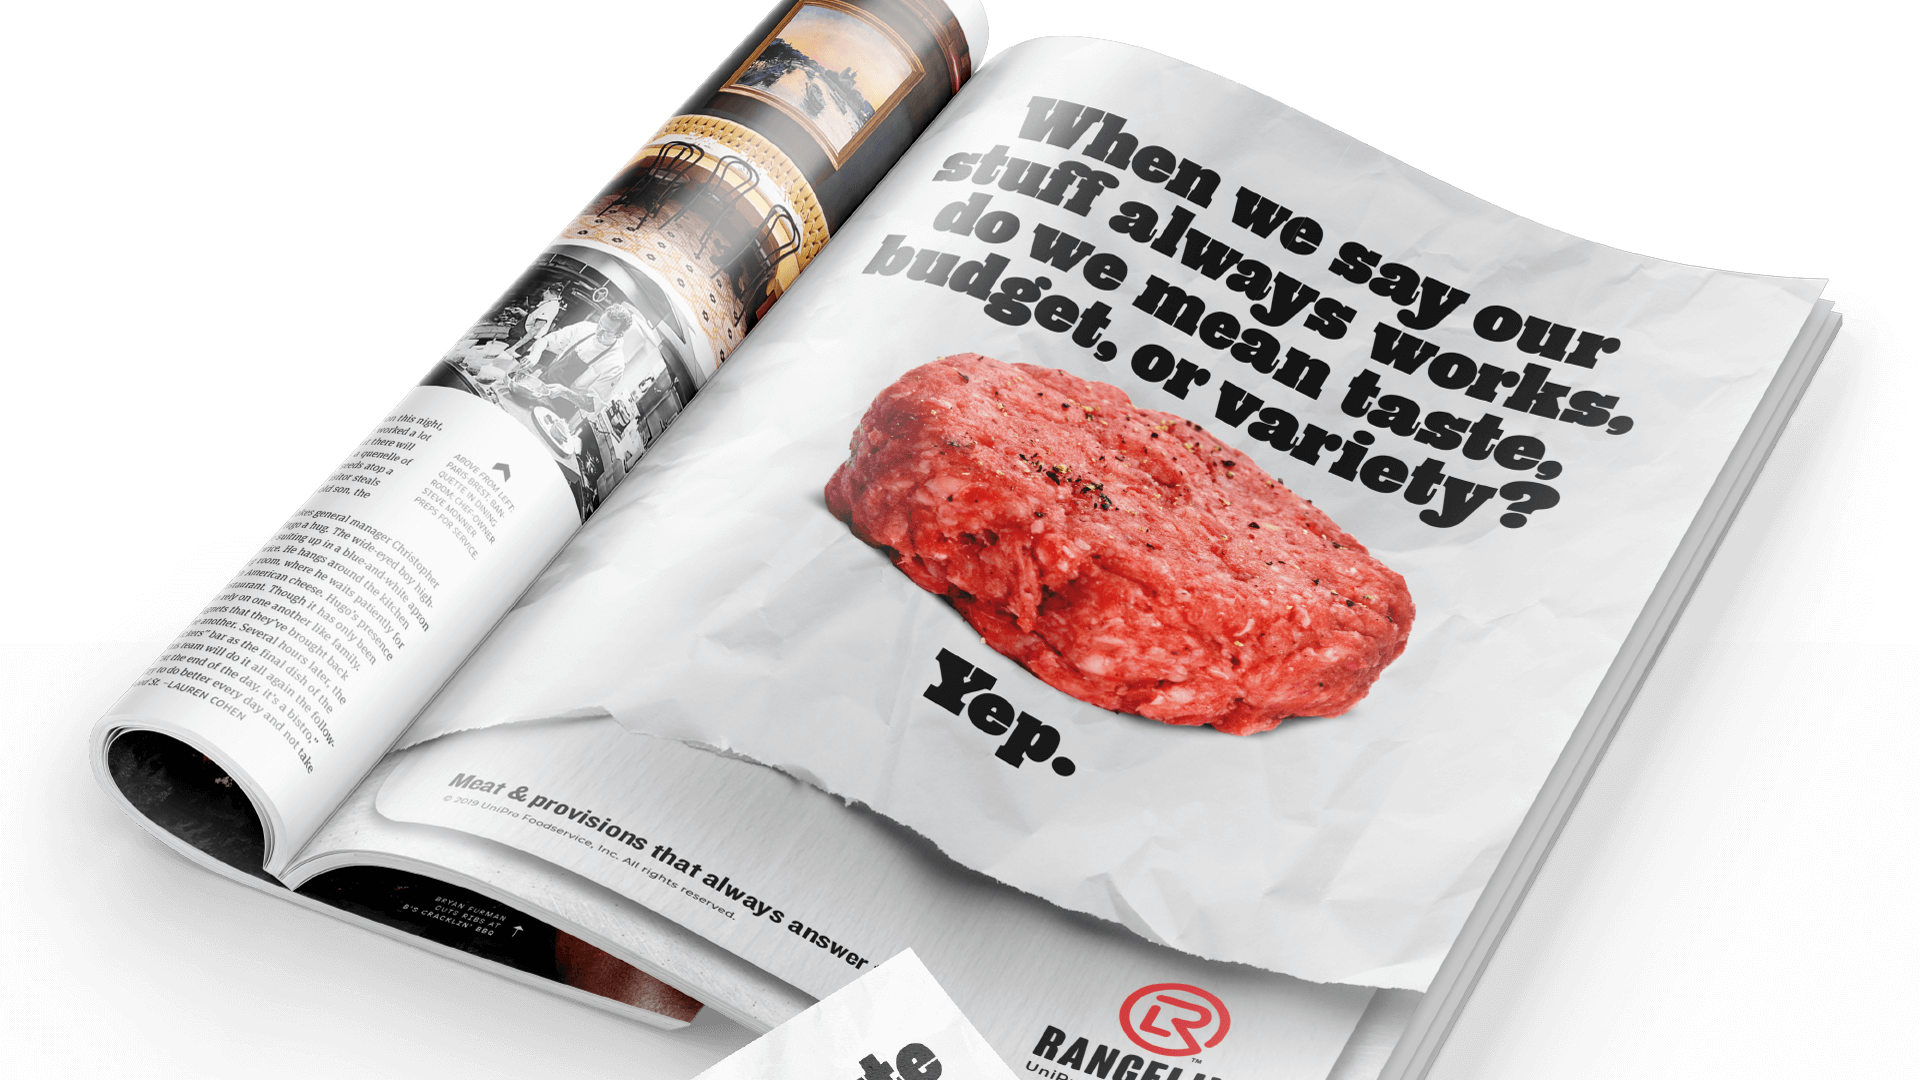 Rangeline Magazine Ad – When we say our stuff always works, do we mean taste, budget, or variety? Yep.